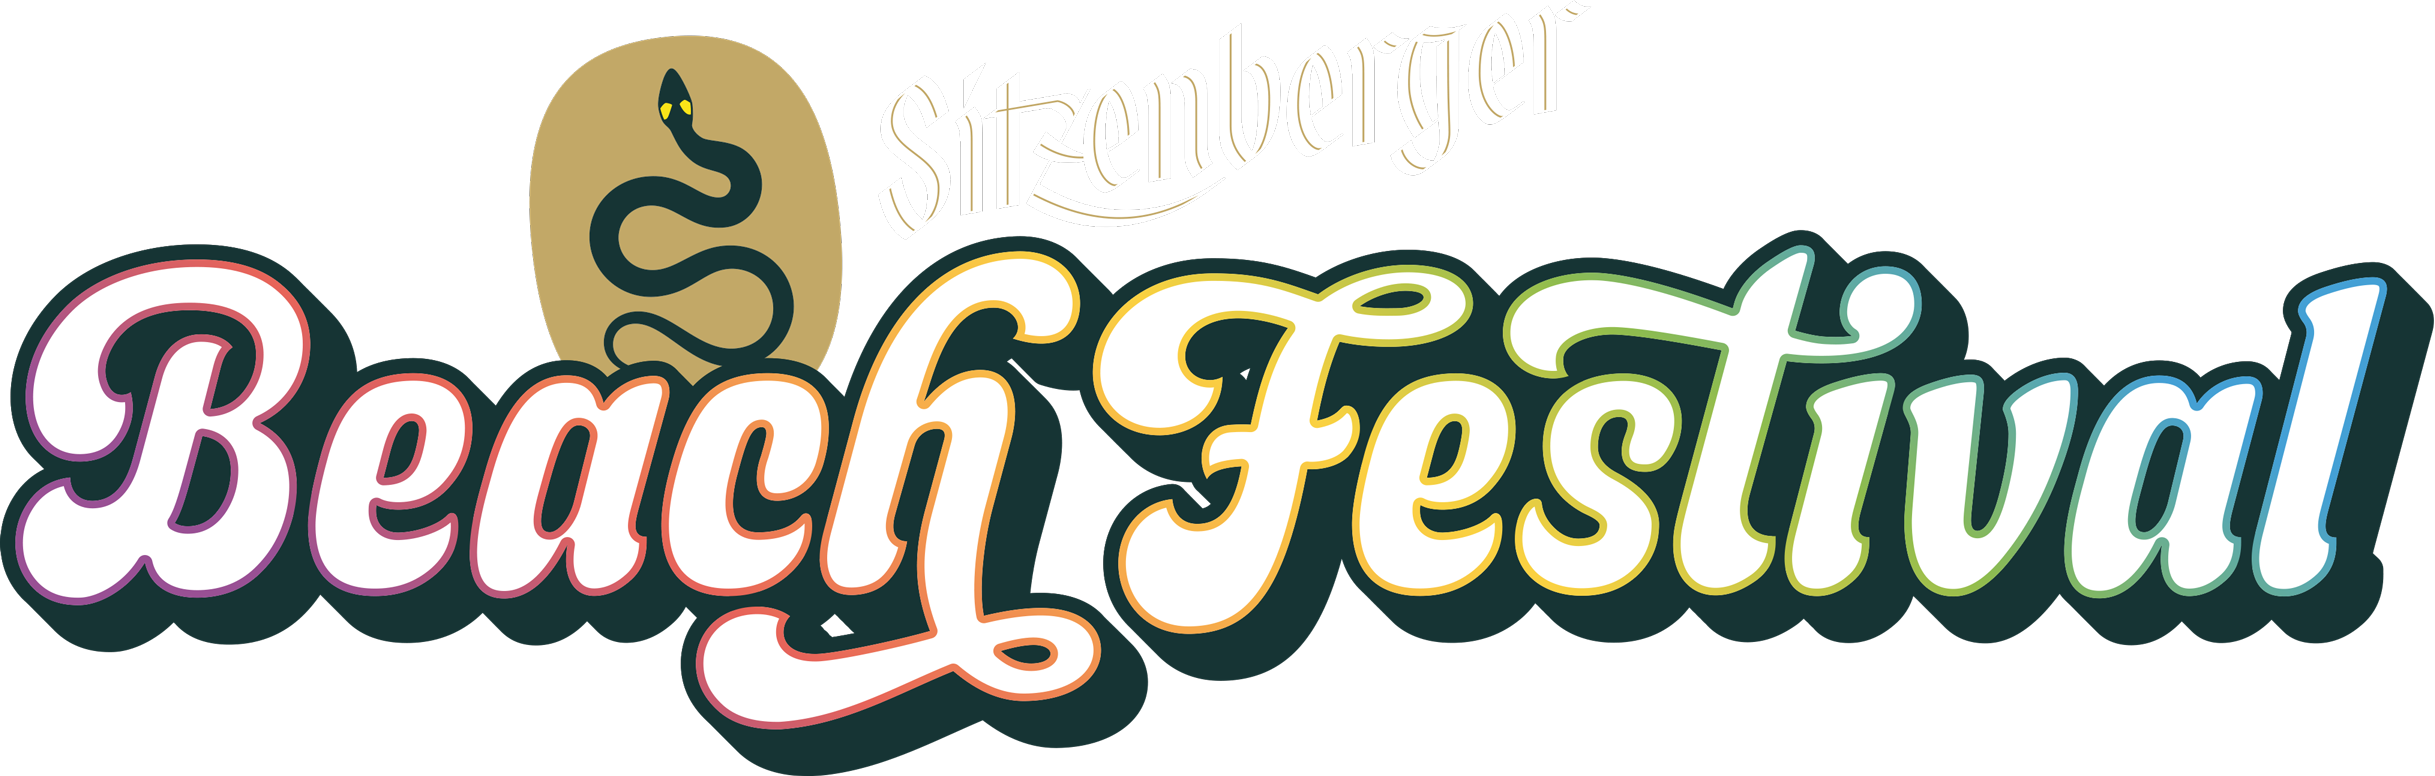 Sitzenberger-Beach-Festival-Logo-einzeilig-neg-RZ